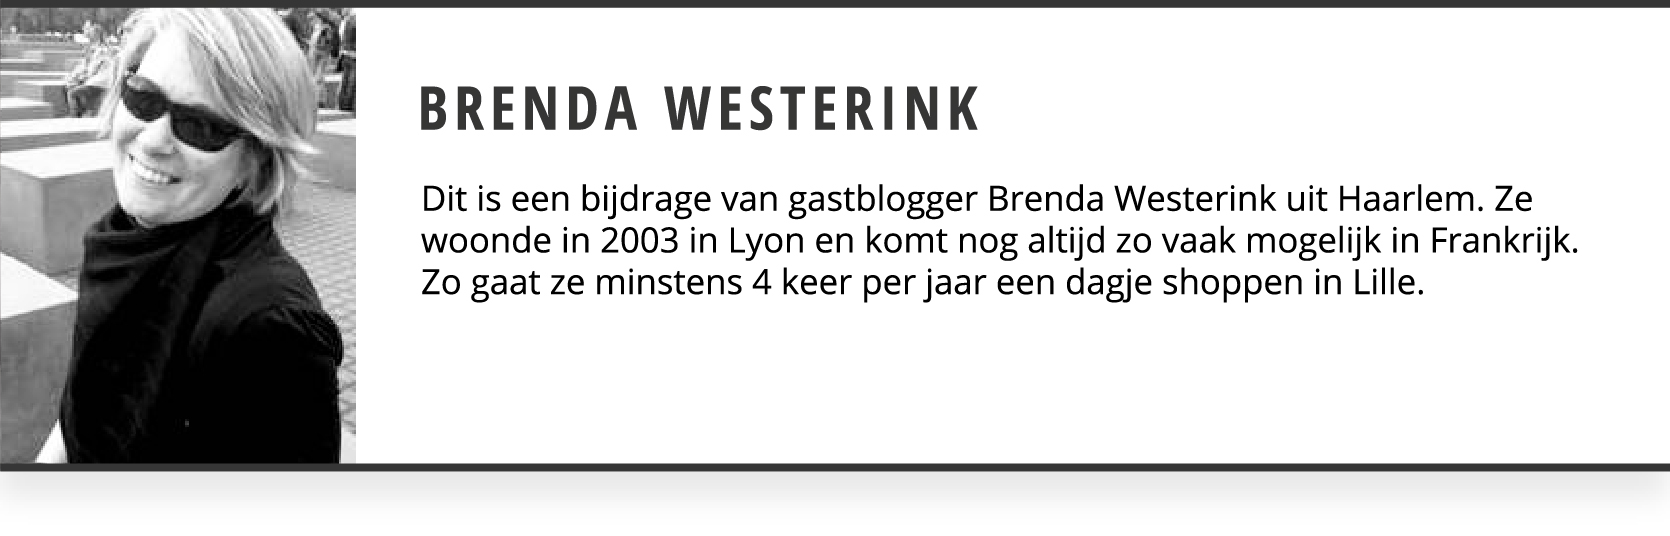 Brenda Westerink Gastblogger